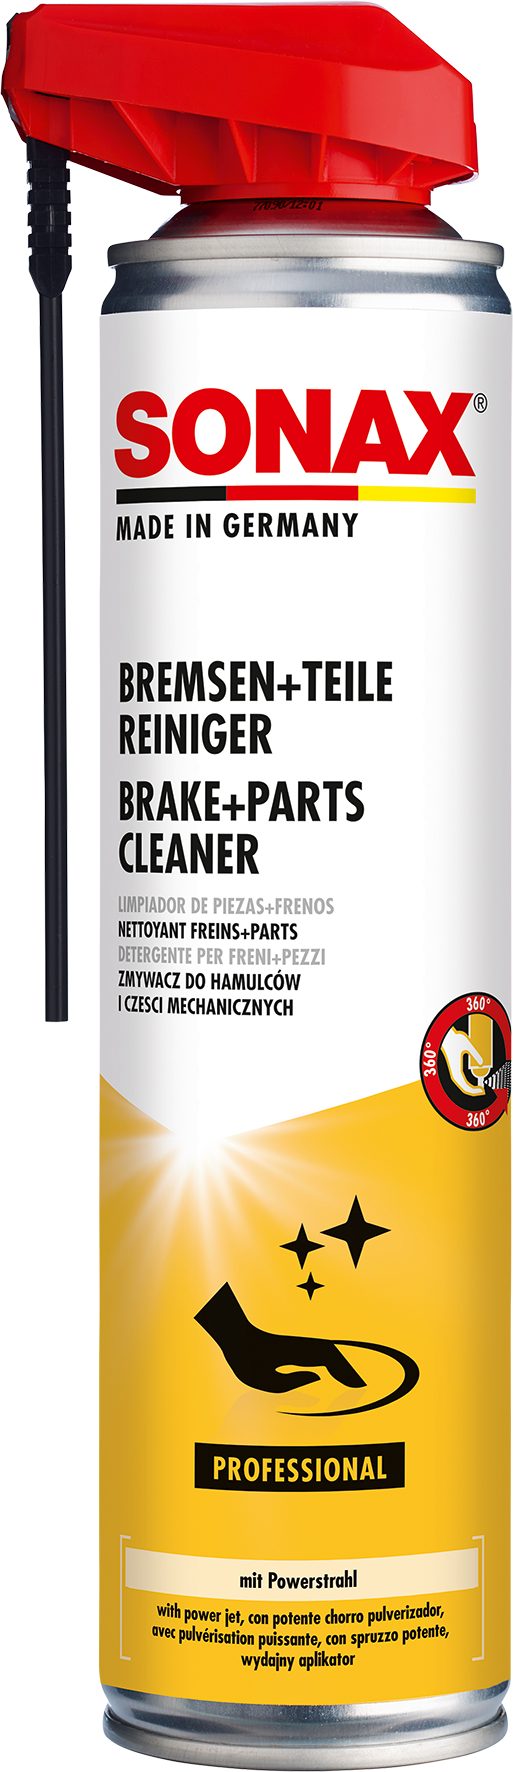 Sonax SONAX PROFESSIONAL Bremsen & TeileReiniger mit EasySpray 400 ml Auto-Reinigungsmittel